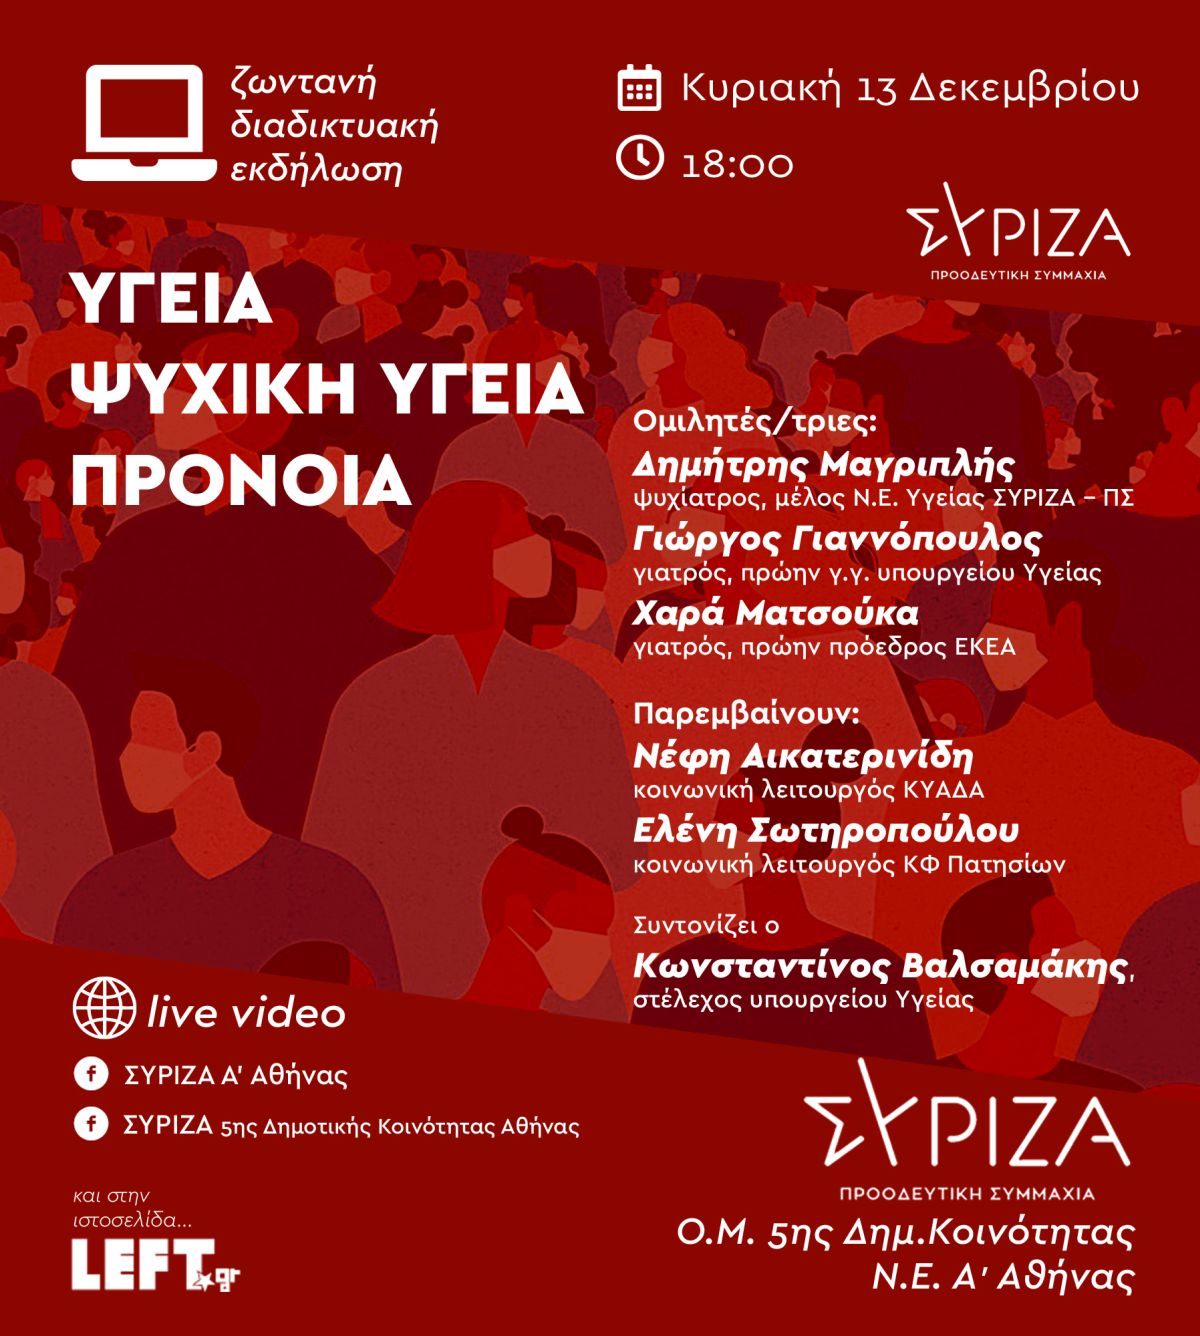 Διαδικτυακή εκδήλωση της Ο.Μ. 5ης Δημοτικής Κοινότητας και της Ν.Ε. Α' Αθήνας του ΣΥΡΙΖΑ - Προοδευτική Συμμαχία με θέμα: «Υγεία - Ψυχική Υγεία - Πρόνοια»